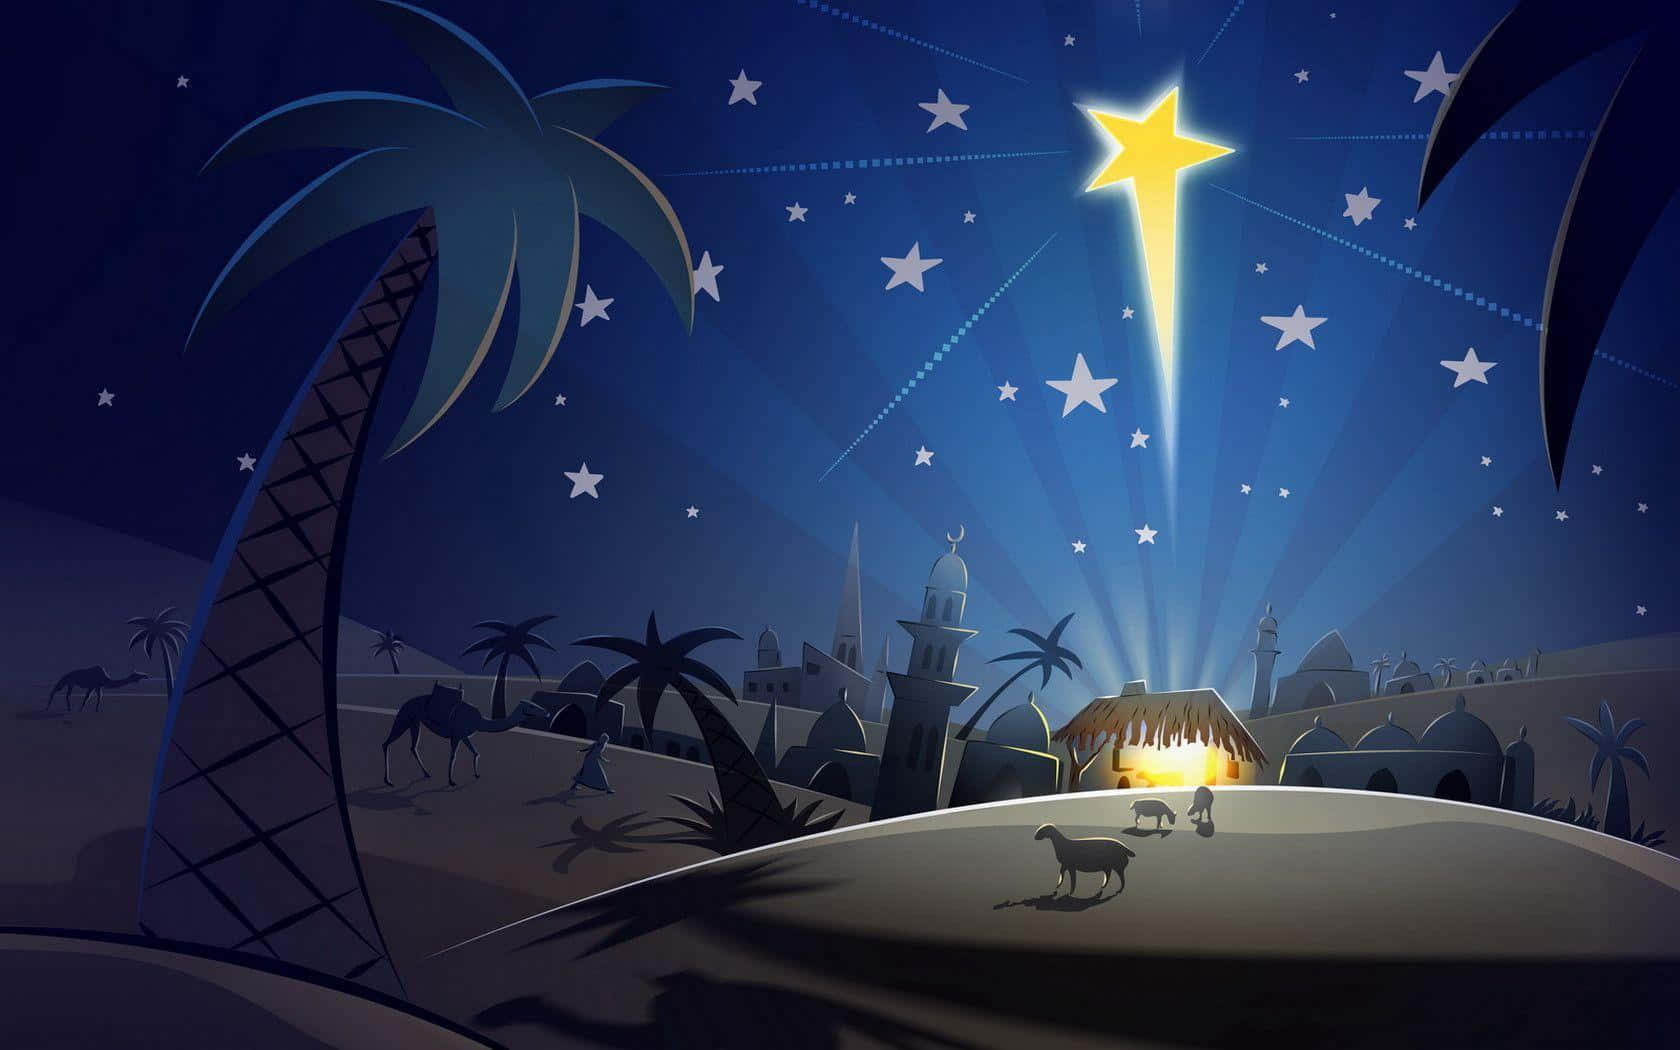 Fejrfødslen Af Jesus Med En Frække Scene.